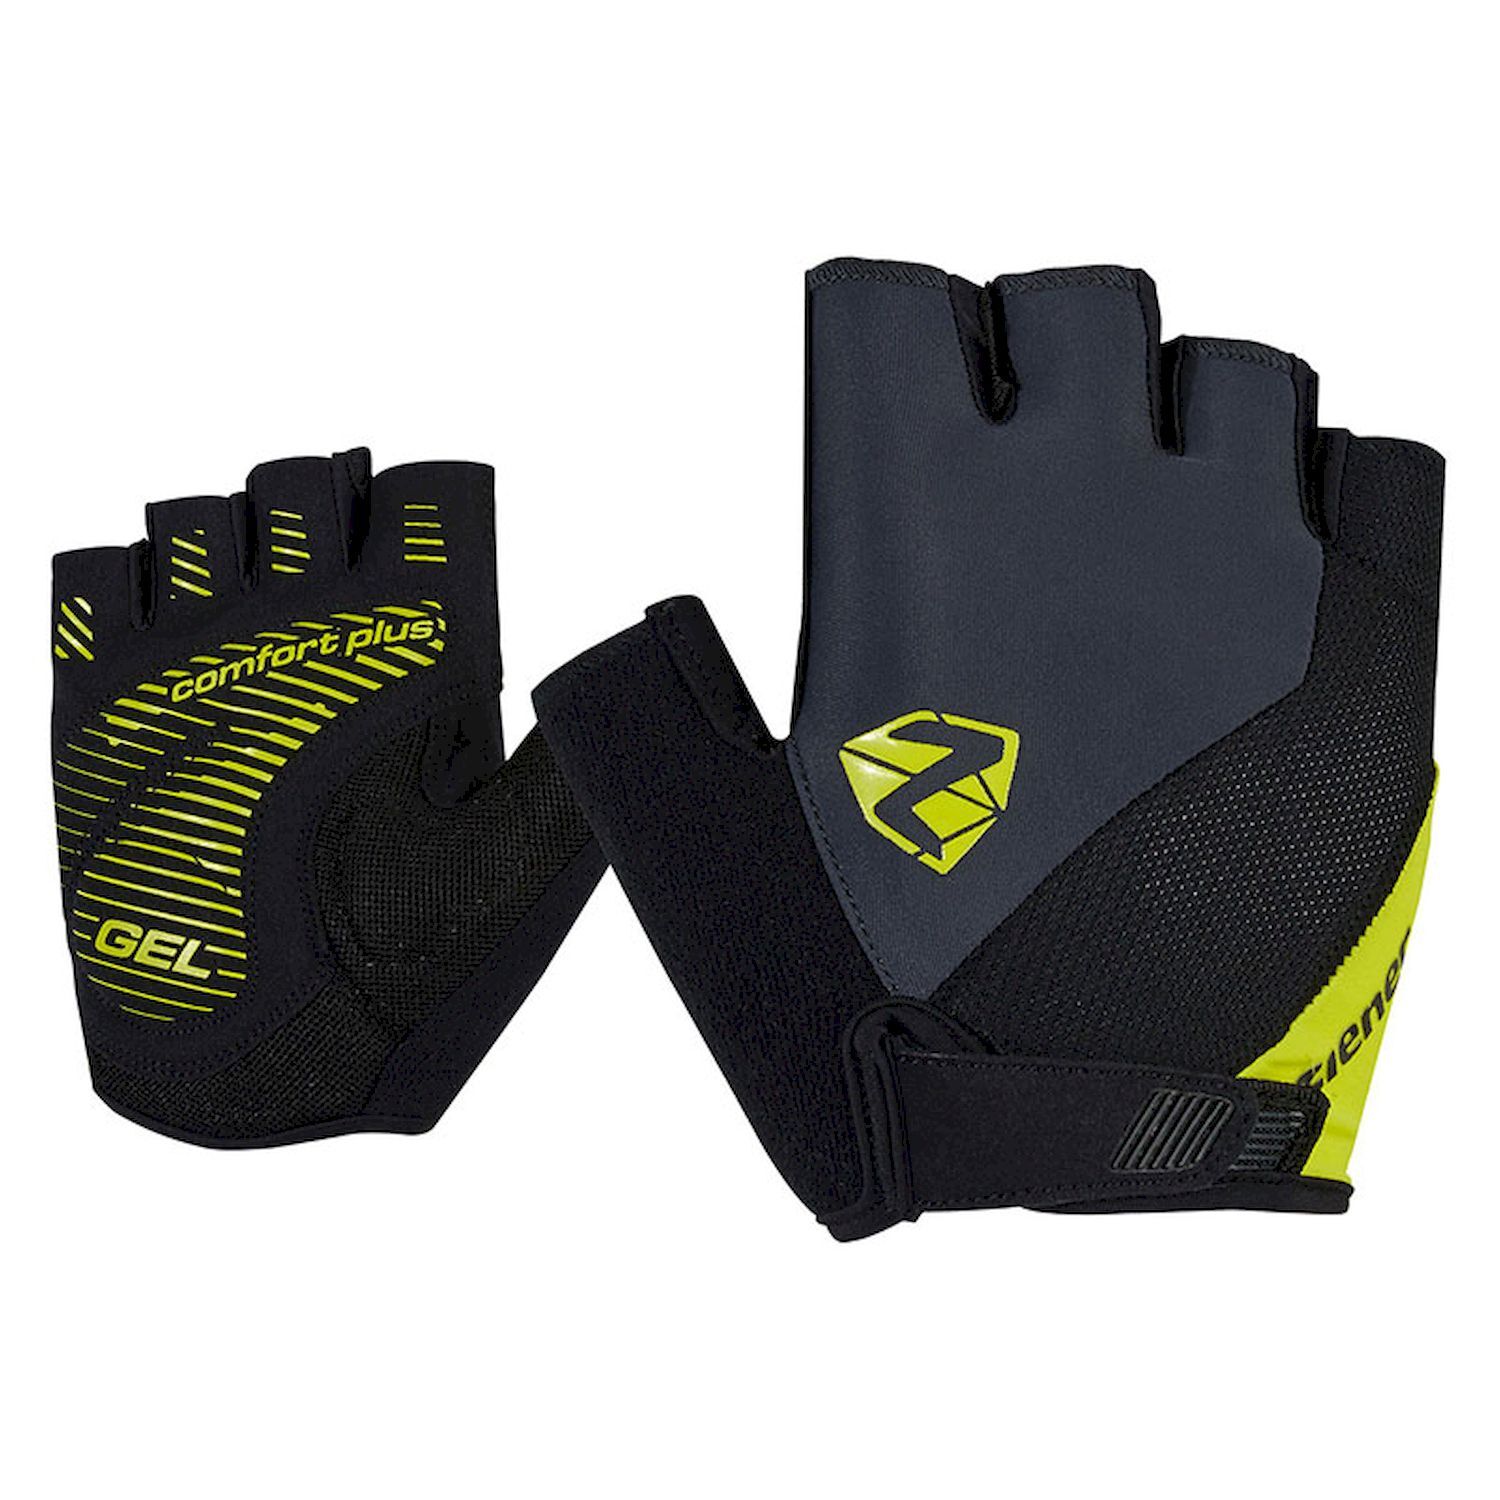 Ziener Collby - Cycling gloves - Men's